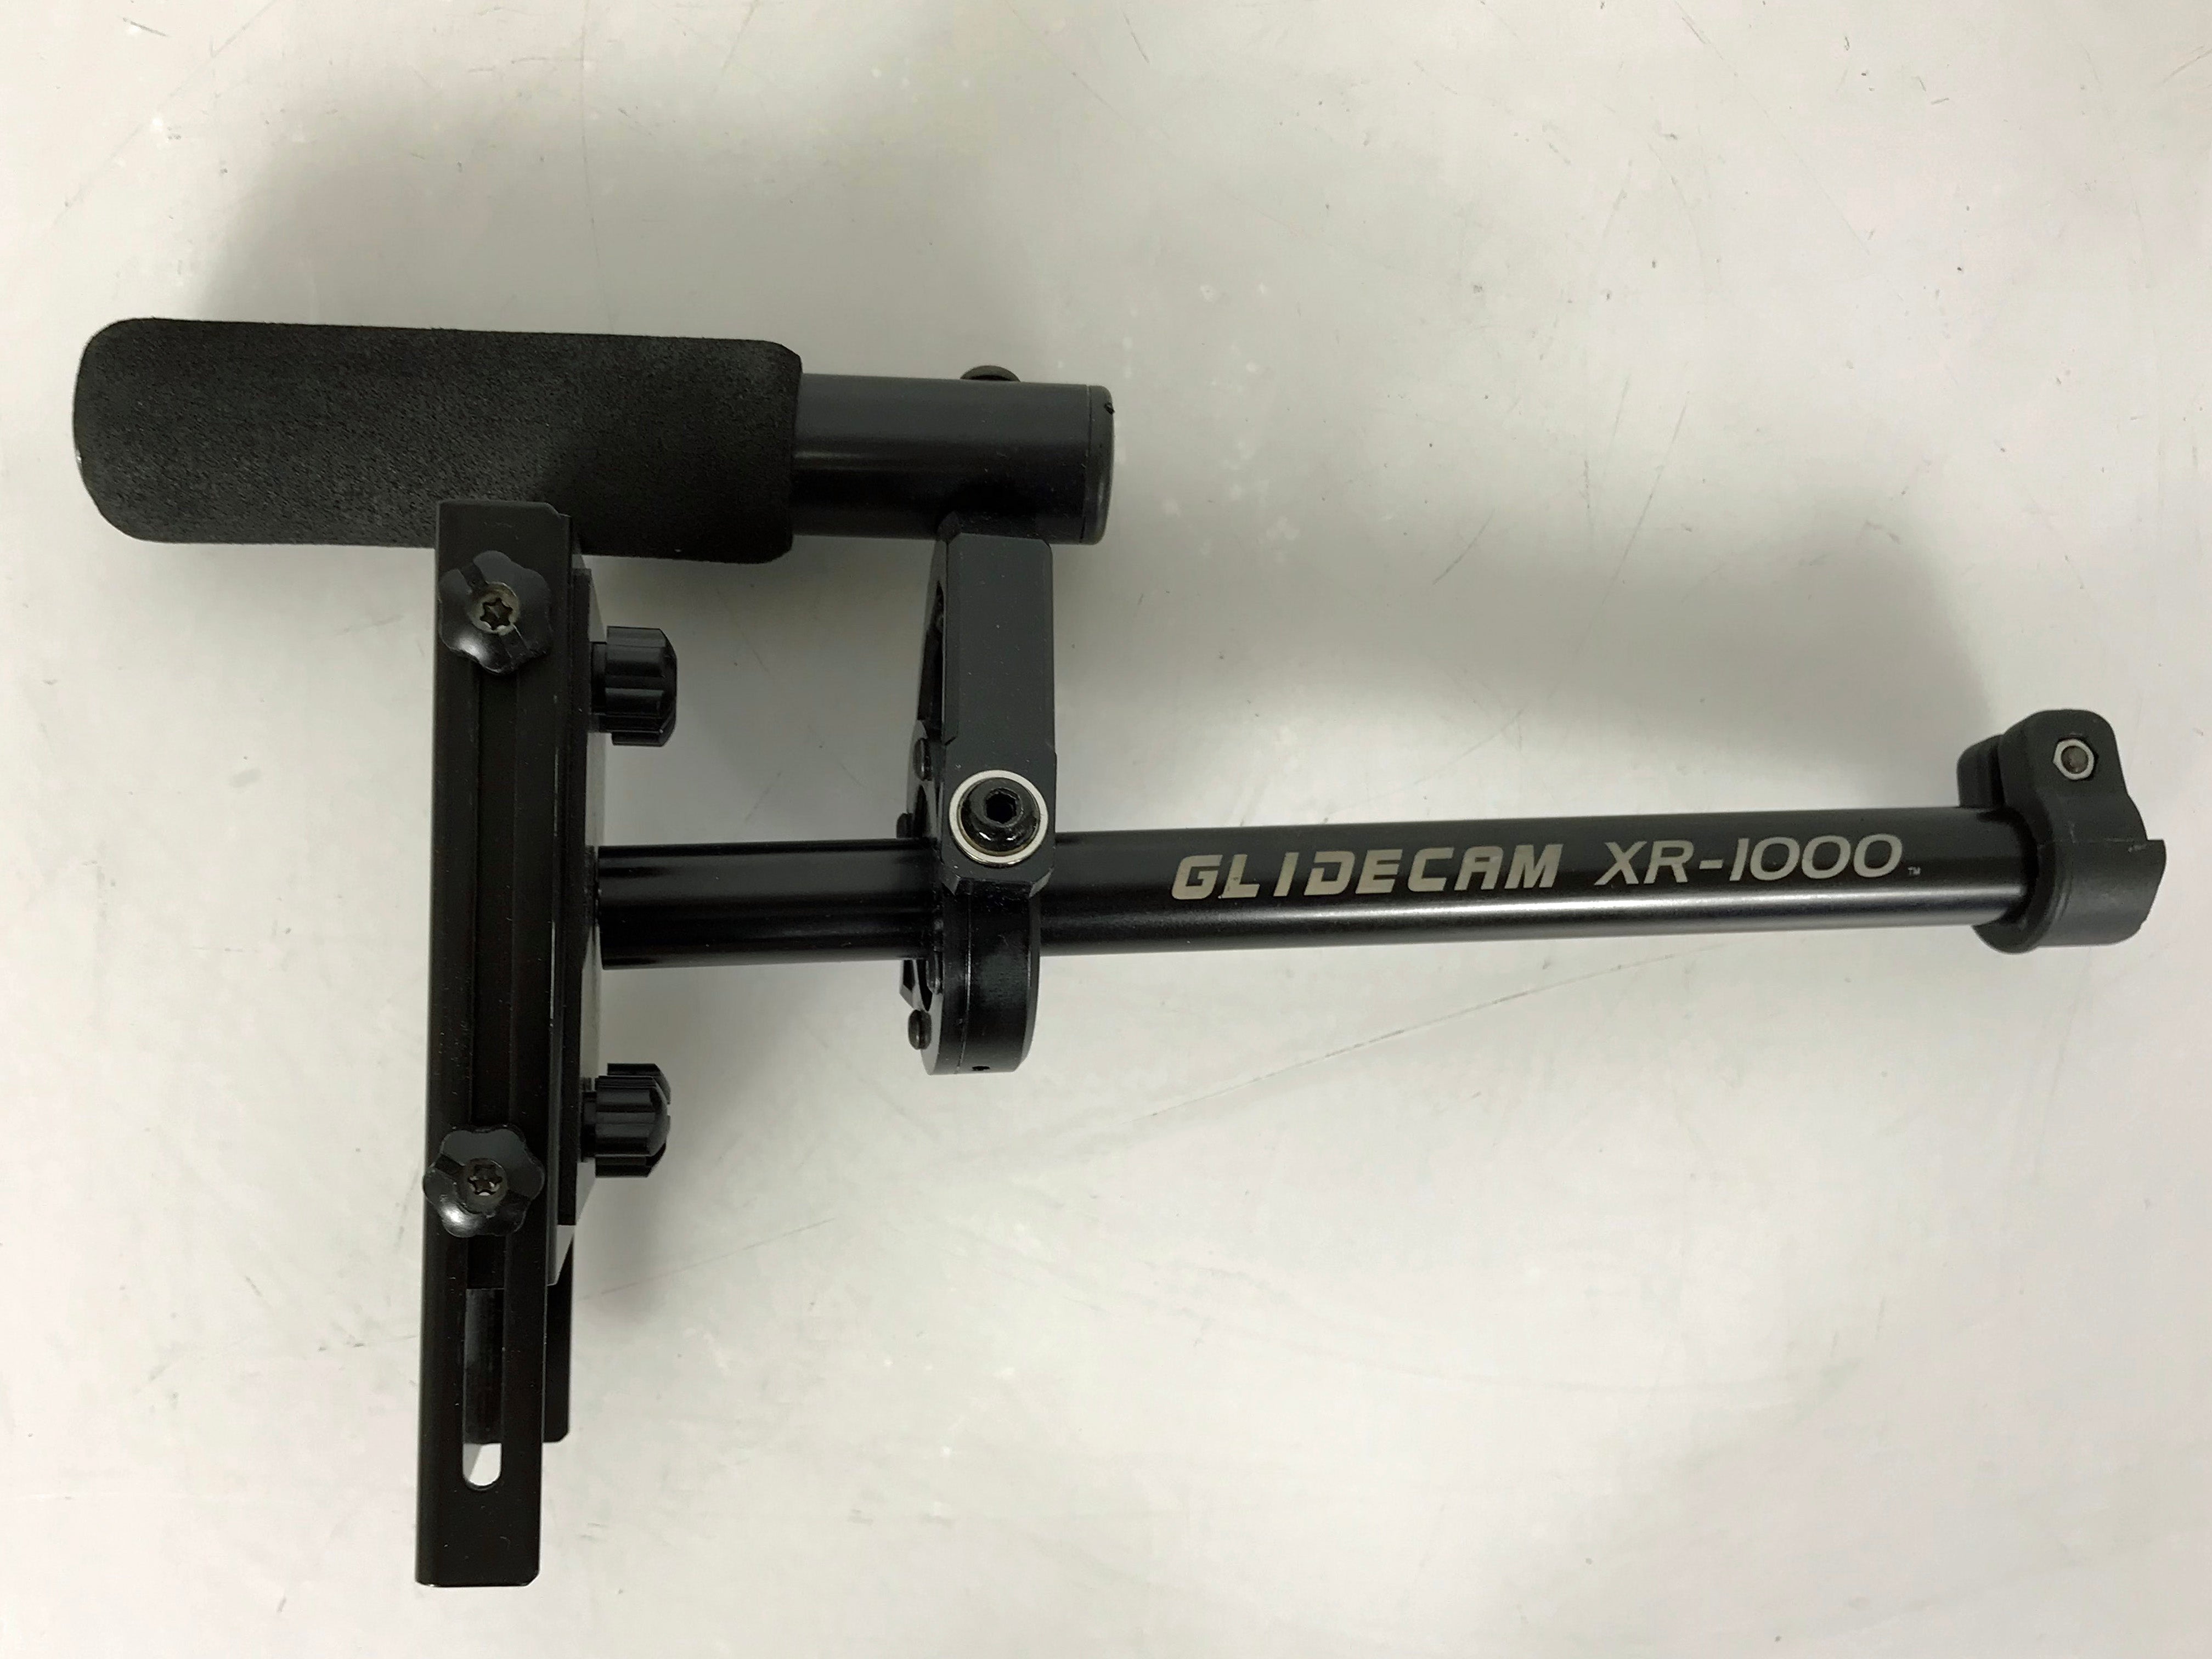 Glidecam XR-1000 Handheld Camera Stabilizer *Missing Base Platform*